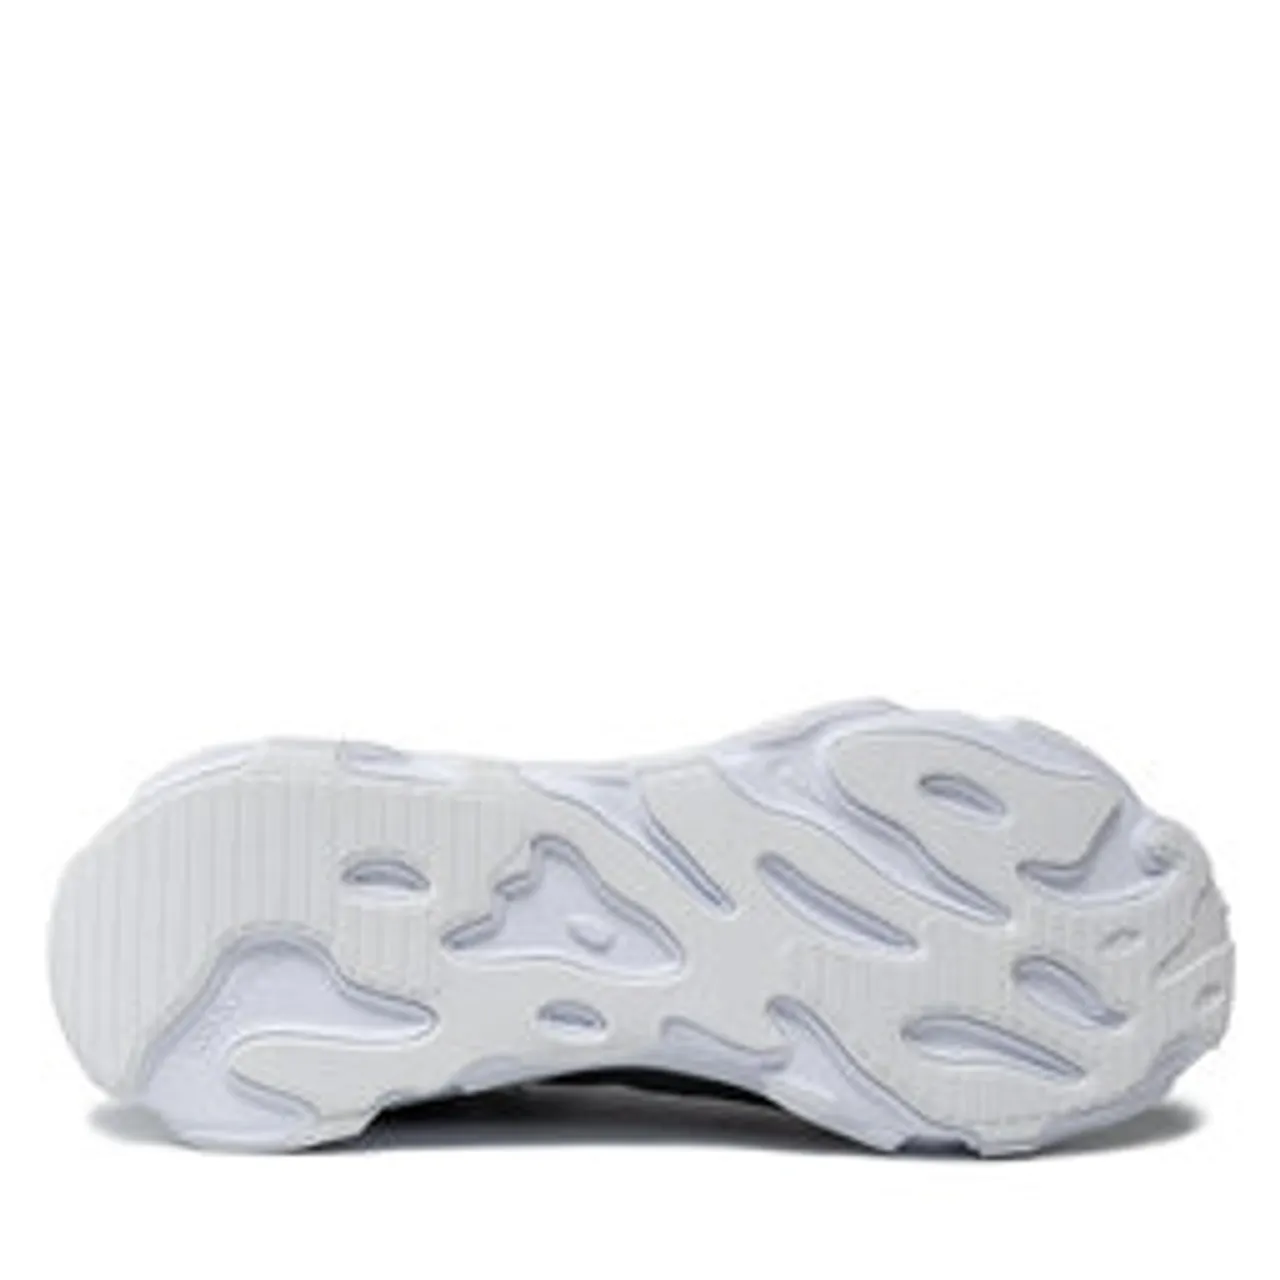 Schuhe Nike React Live CV1772 003 Black/White/Dk Smoke Grey